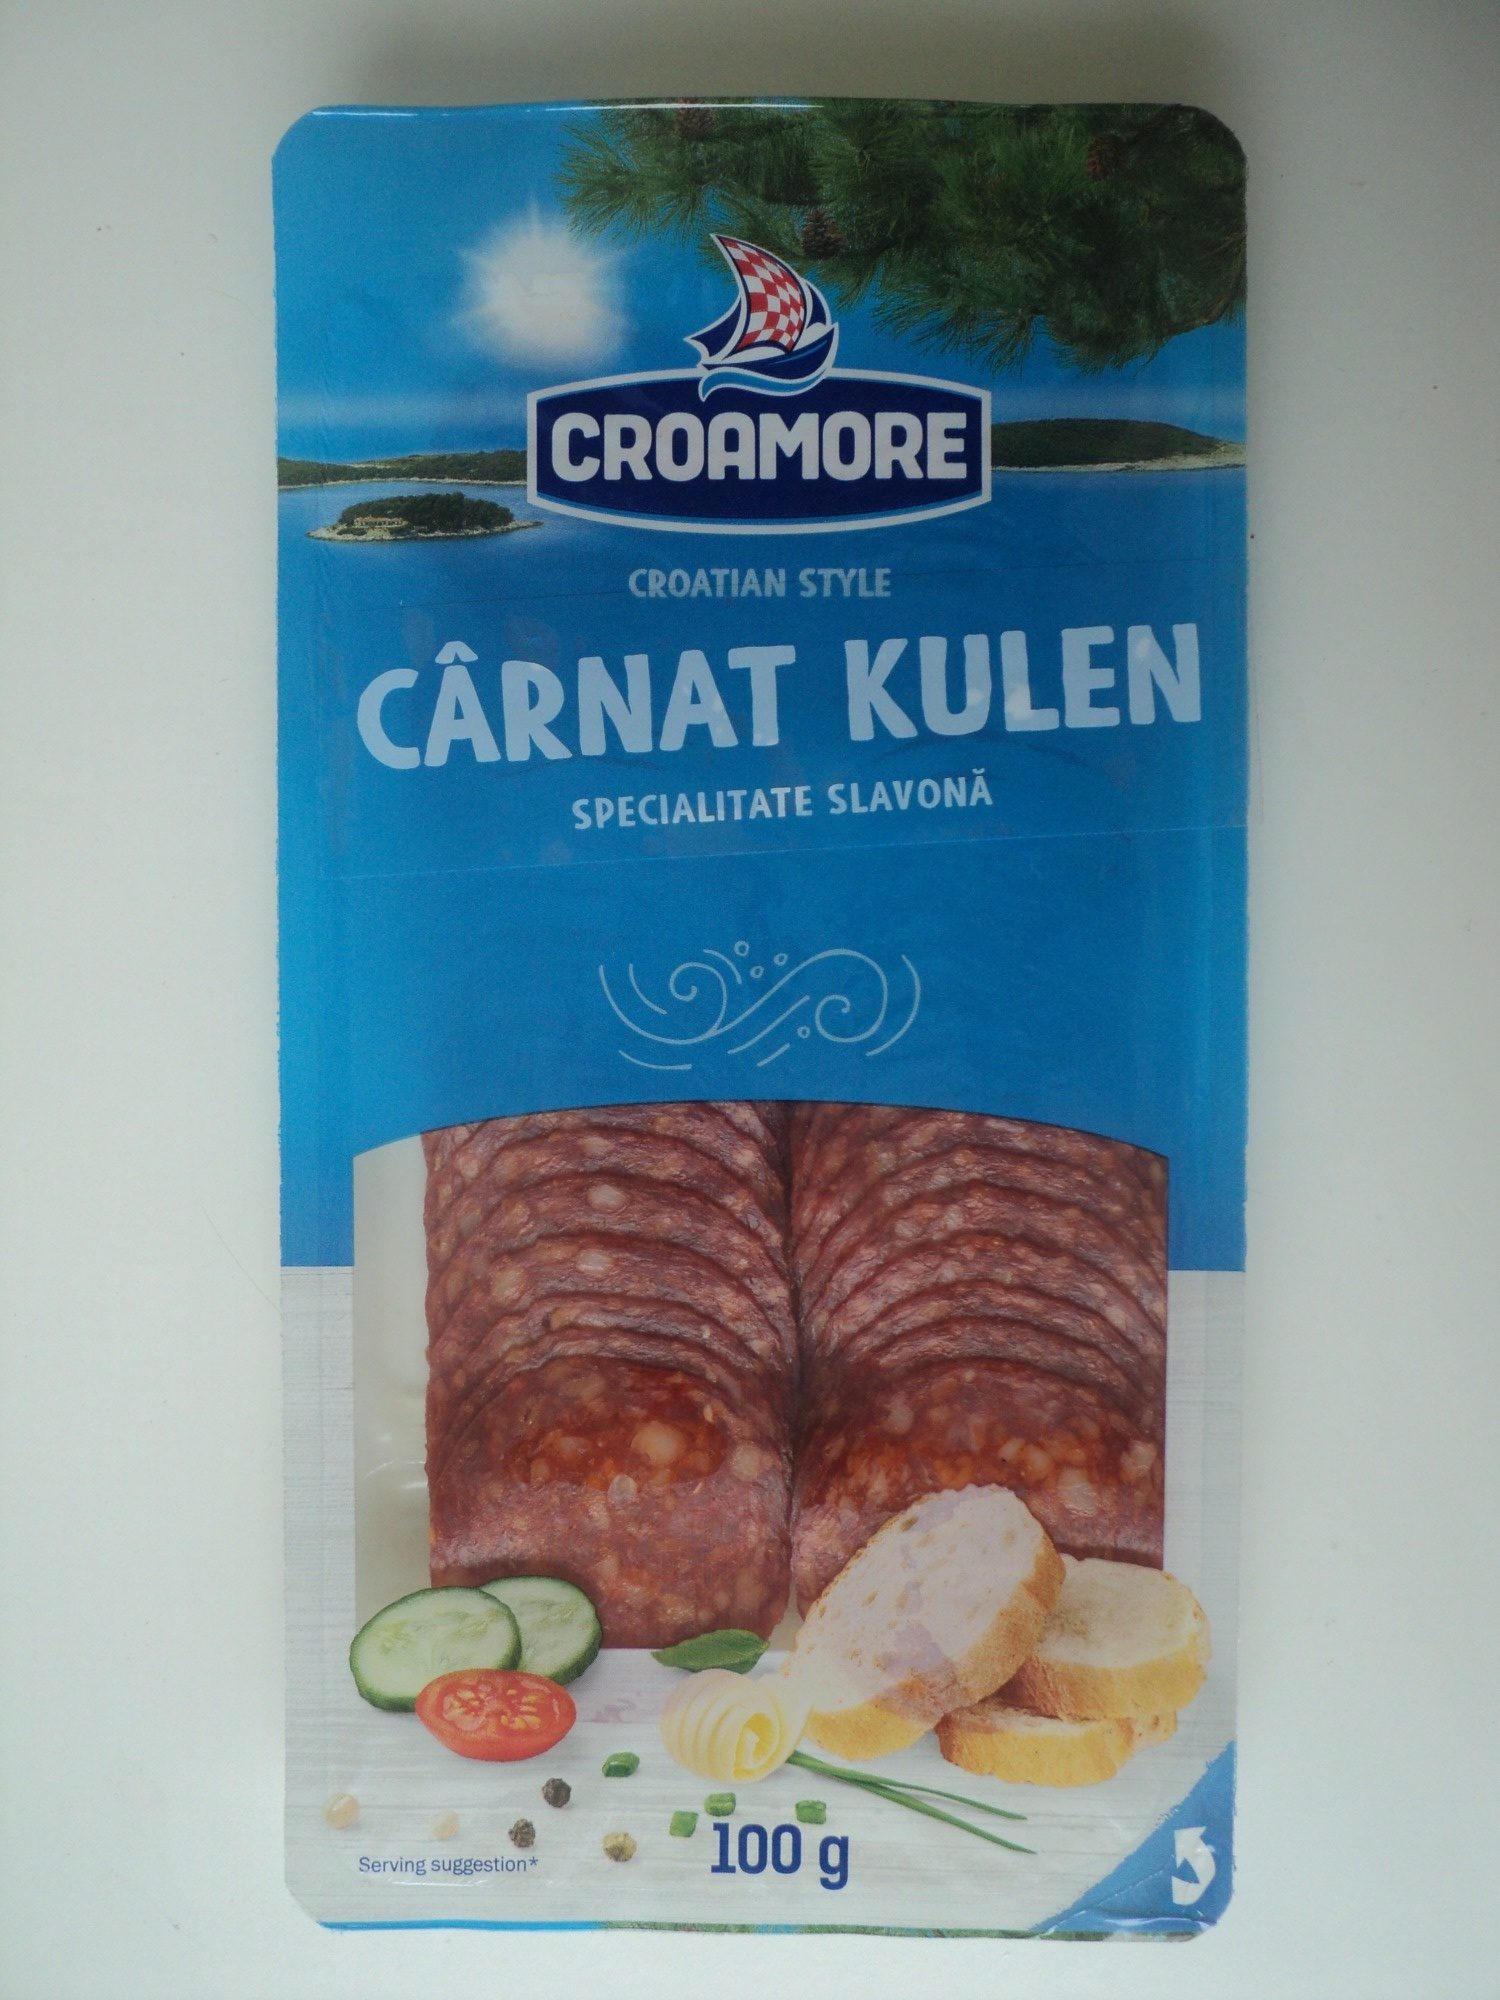 Croamore Carnat Kulen - Product - ro